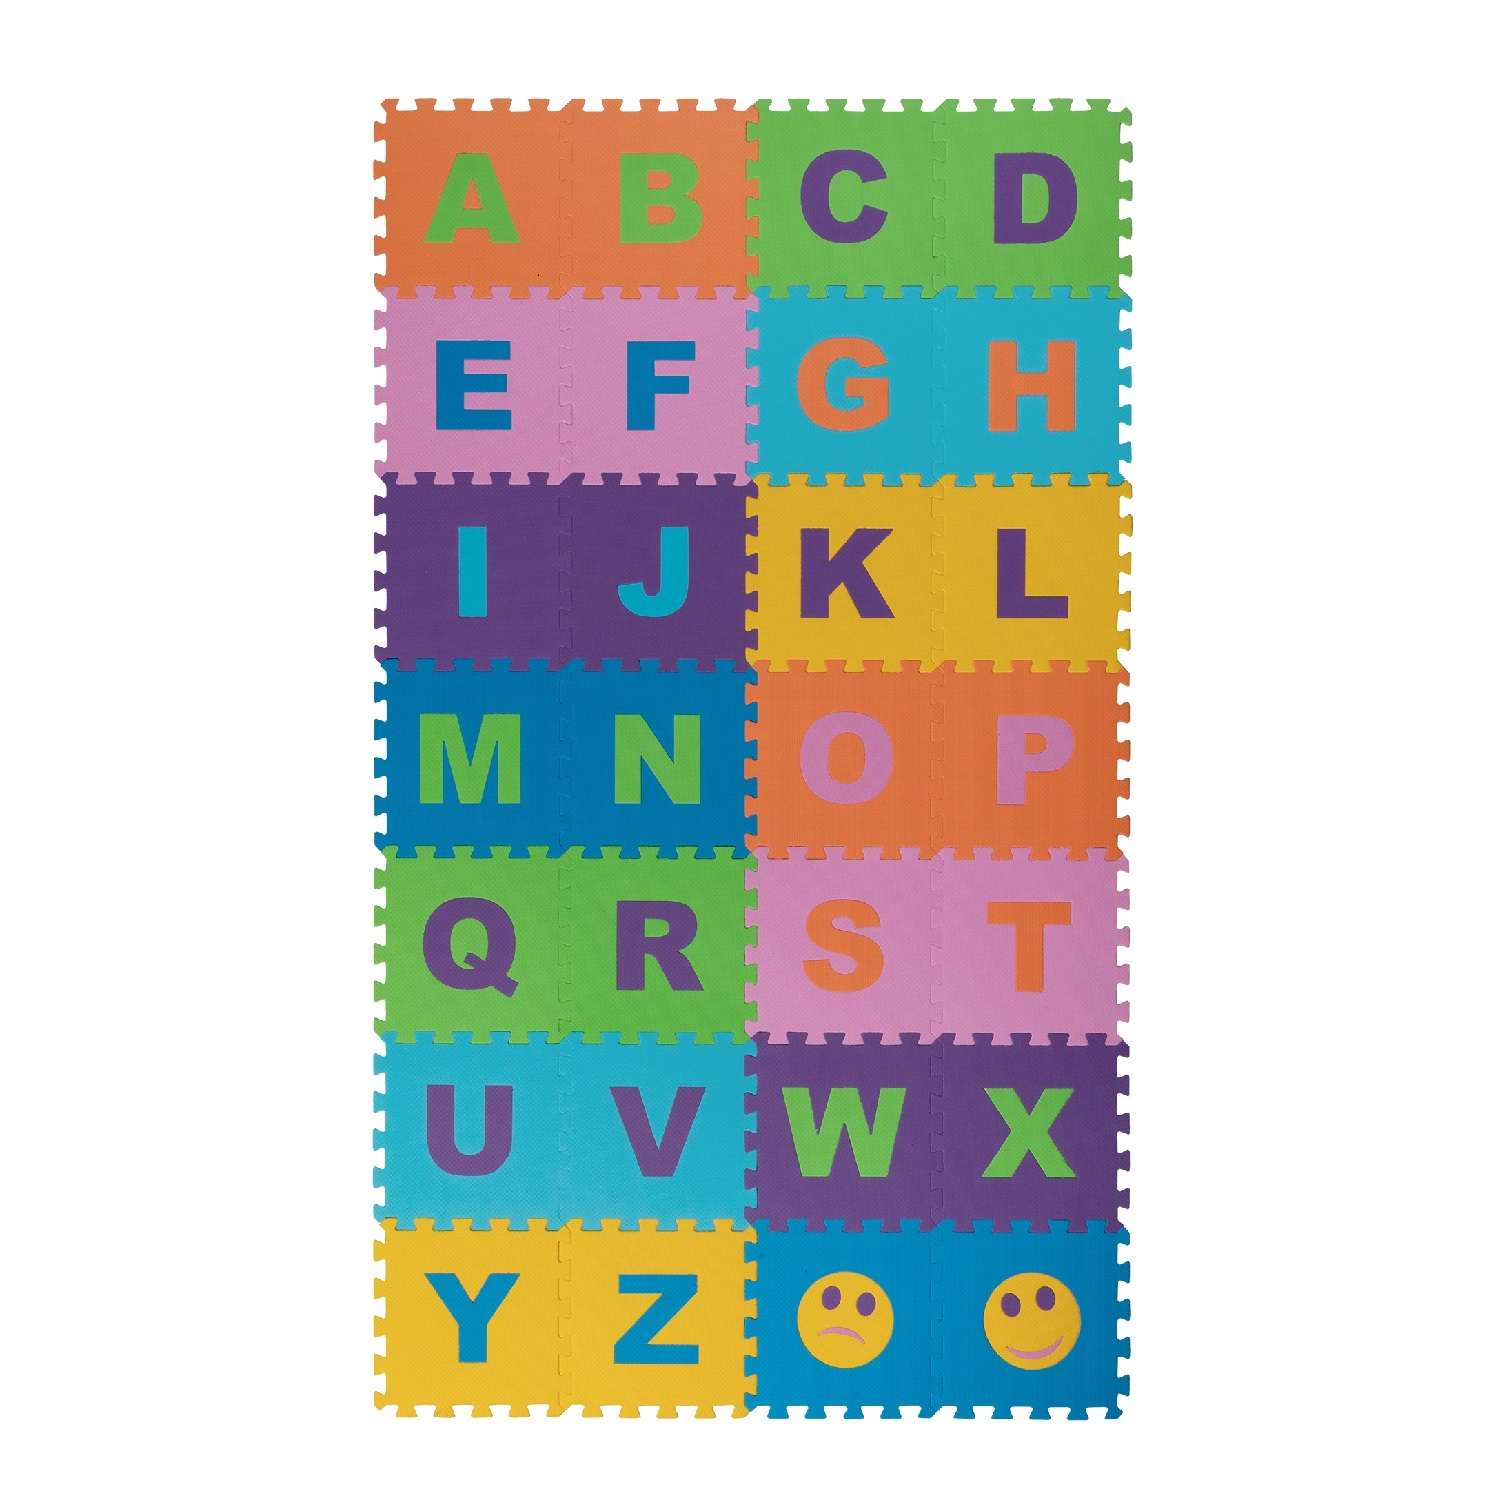 Развивающий детский коврик Eco cover игровой для ползания мягкий пол Английский Алфавит 25х25 - фото 1